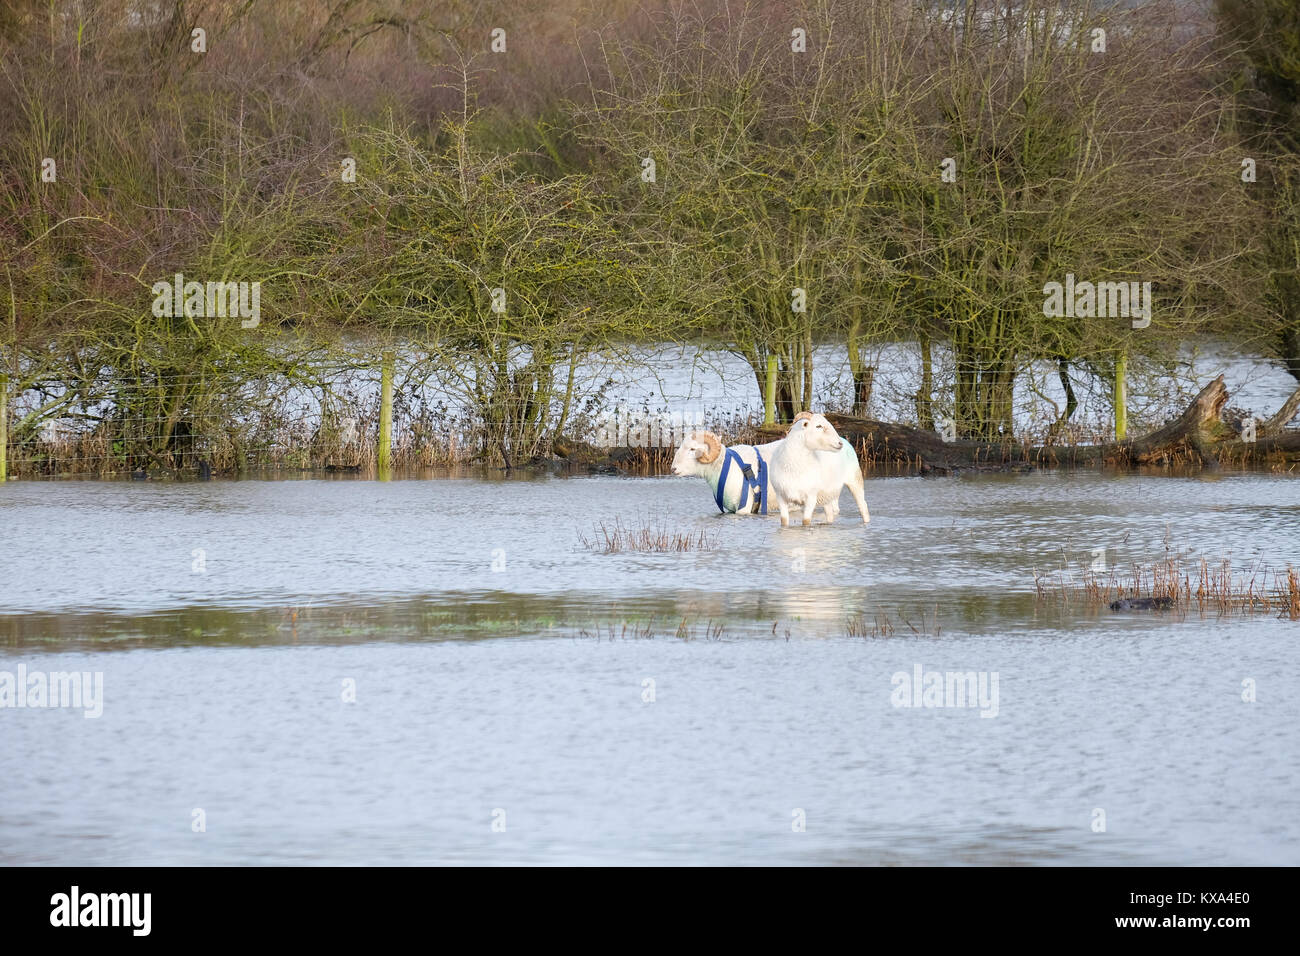 Schafe gerettet aus überschwemmten Feldern in der Nähe mountsorrel nach den jüngsten starken Regenfälle verursacht, den Fluss zu Flut steigen Stockfoto